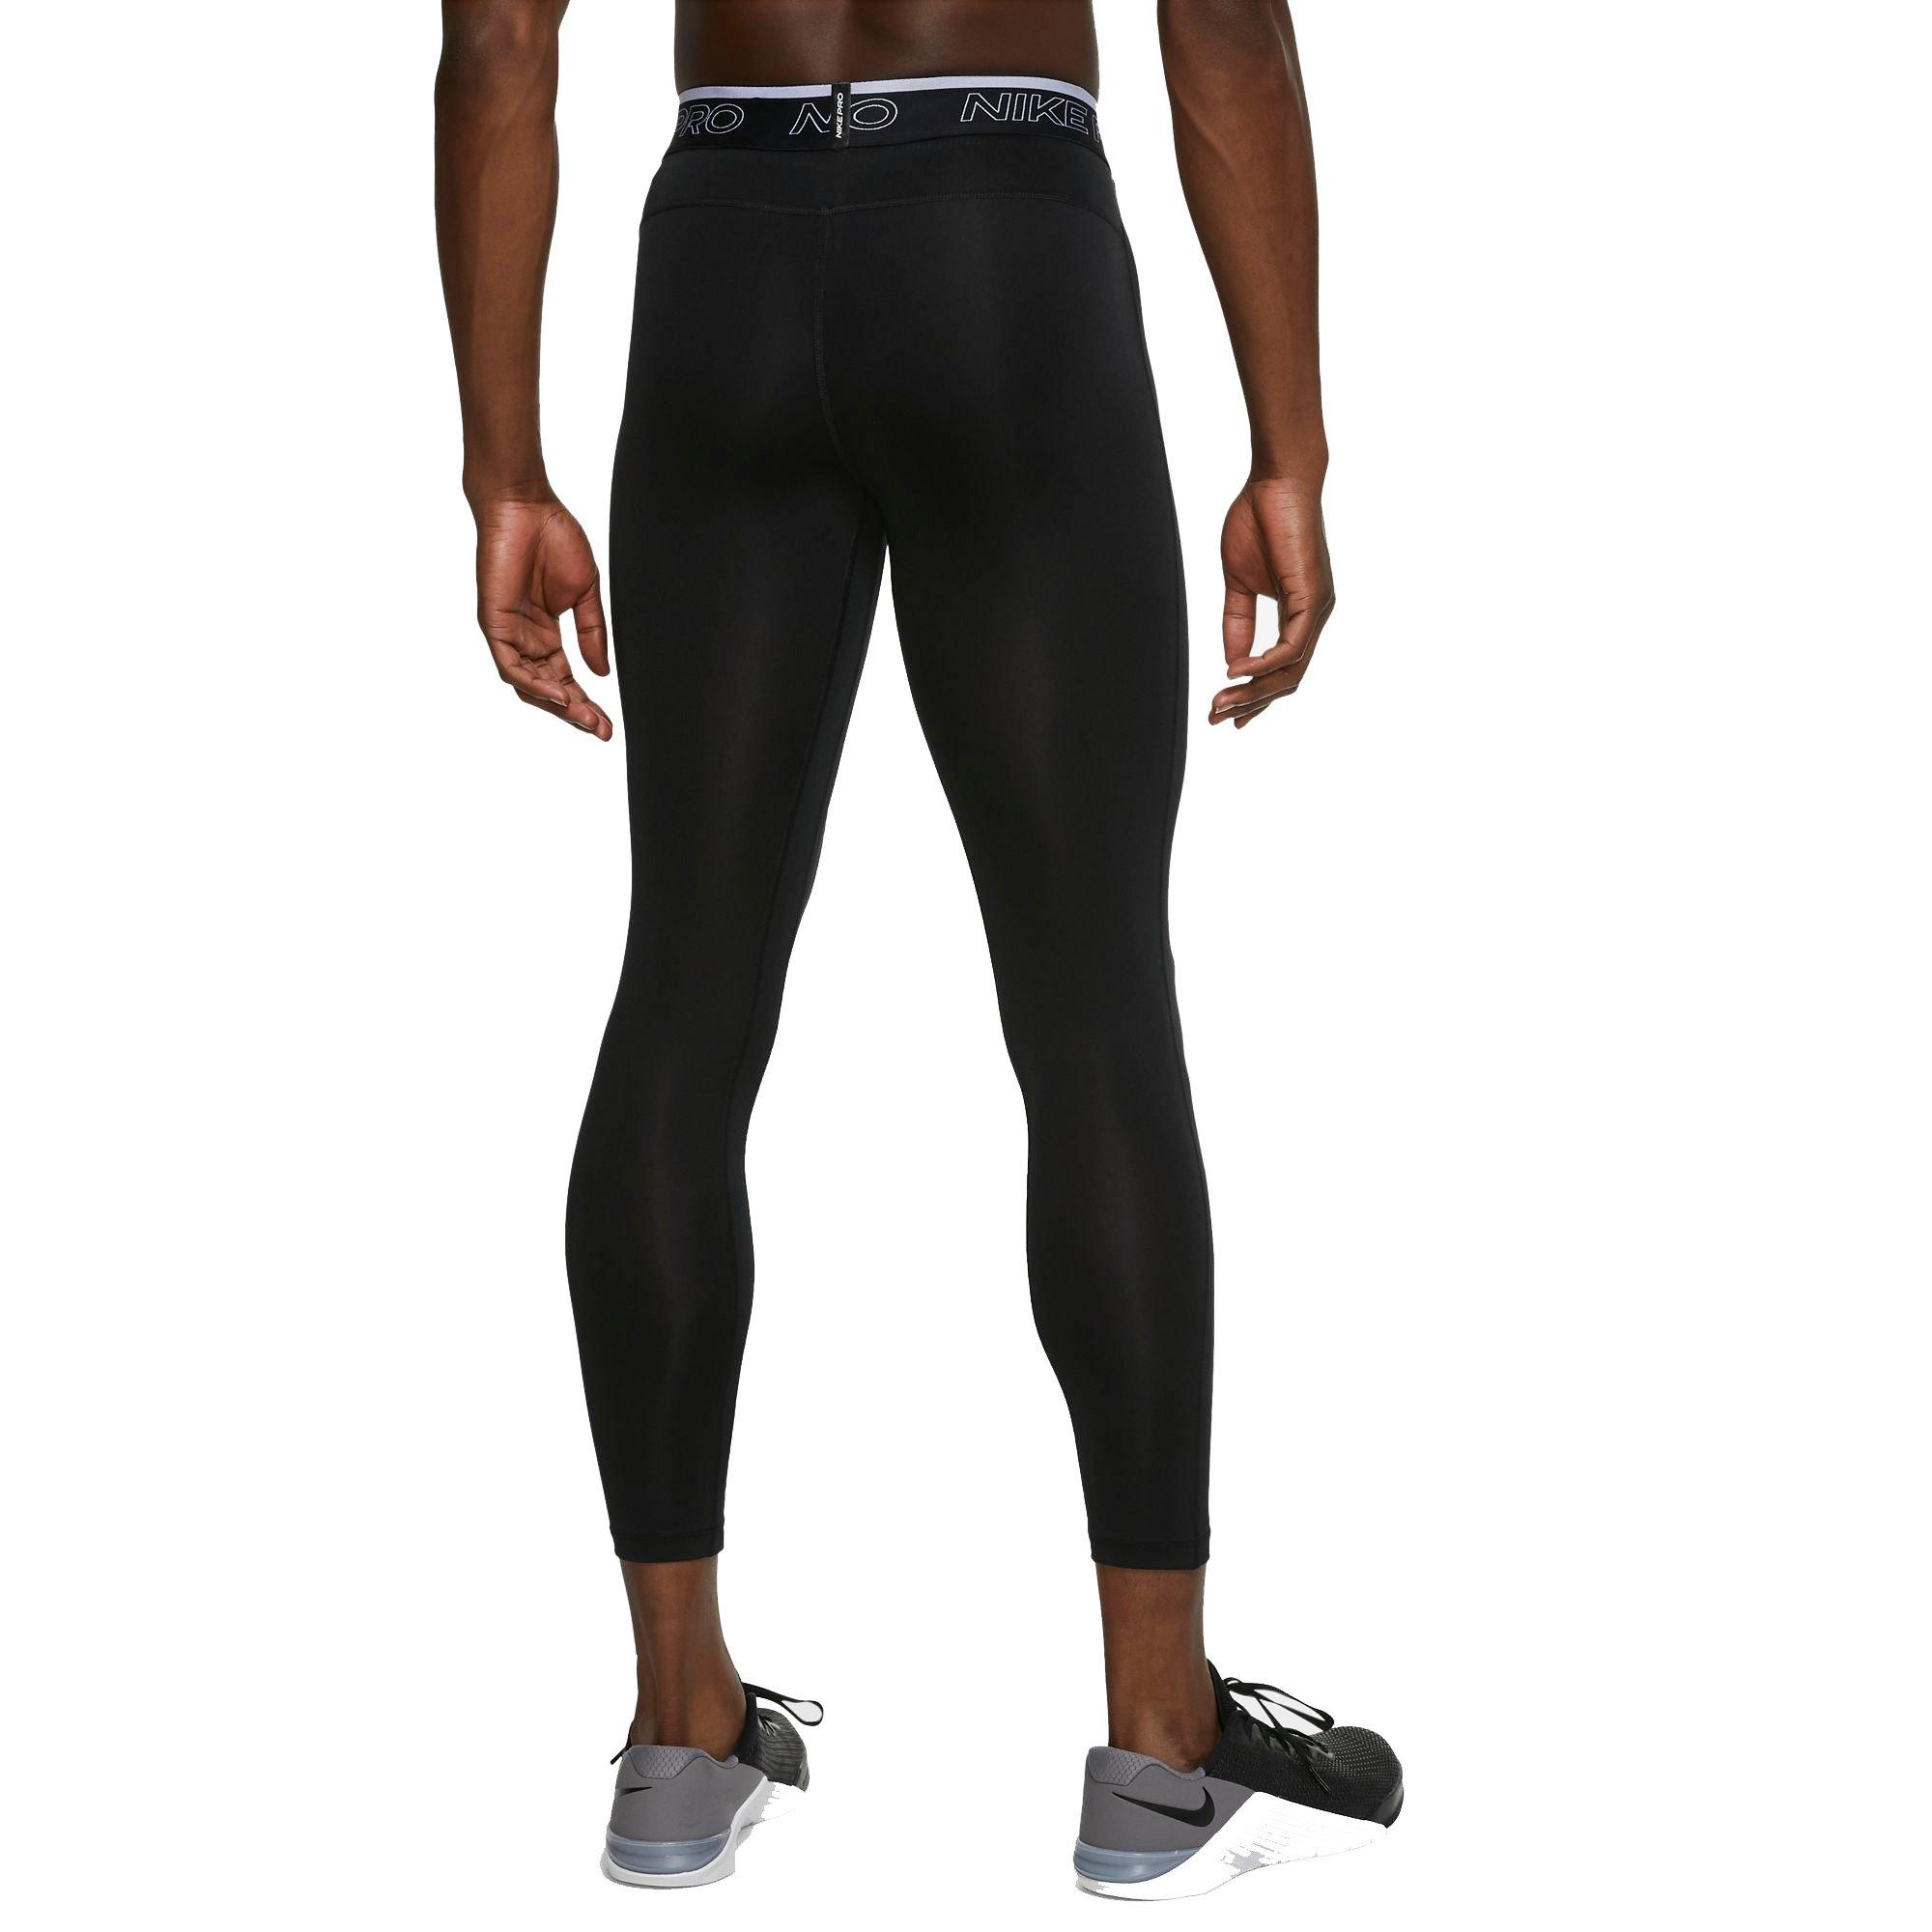 Nike Pro Men's Black 3/4 Tights